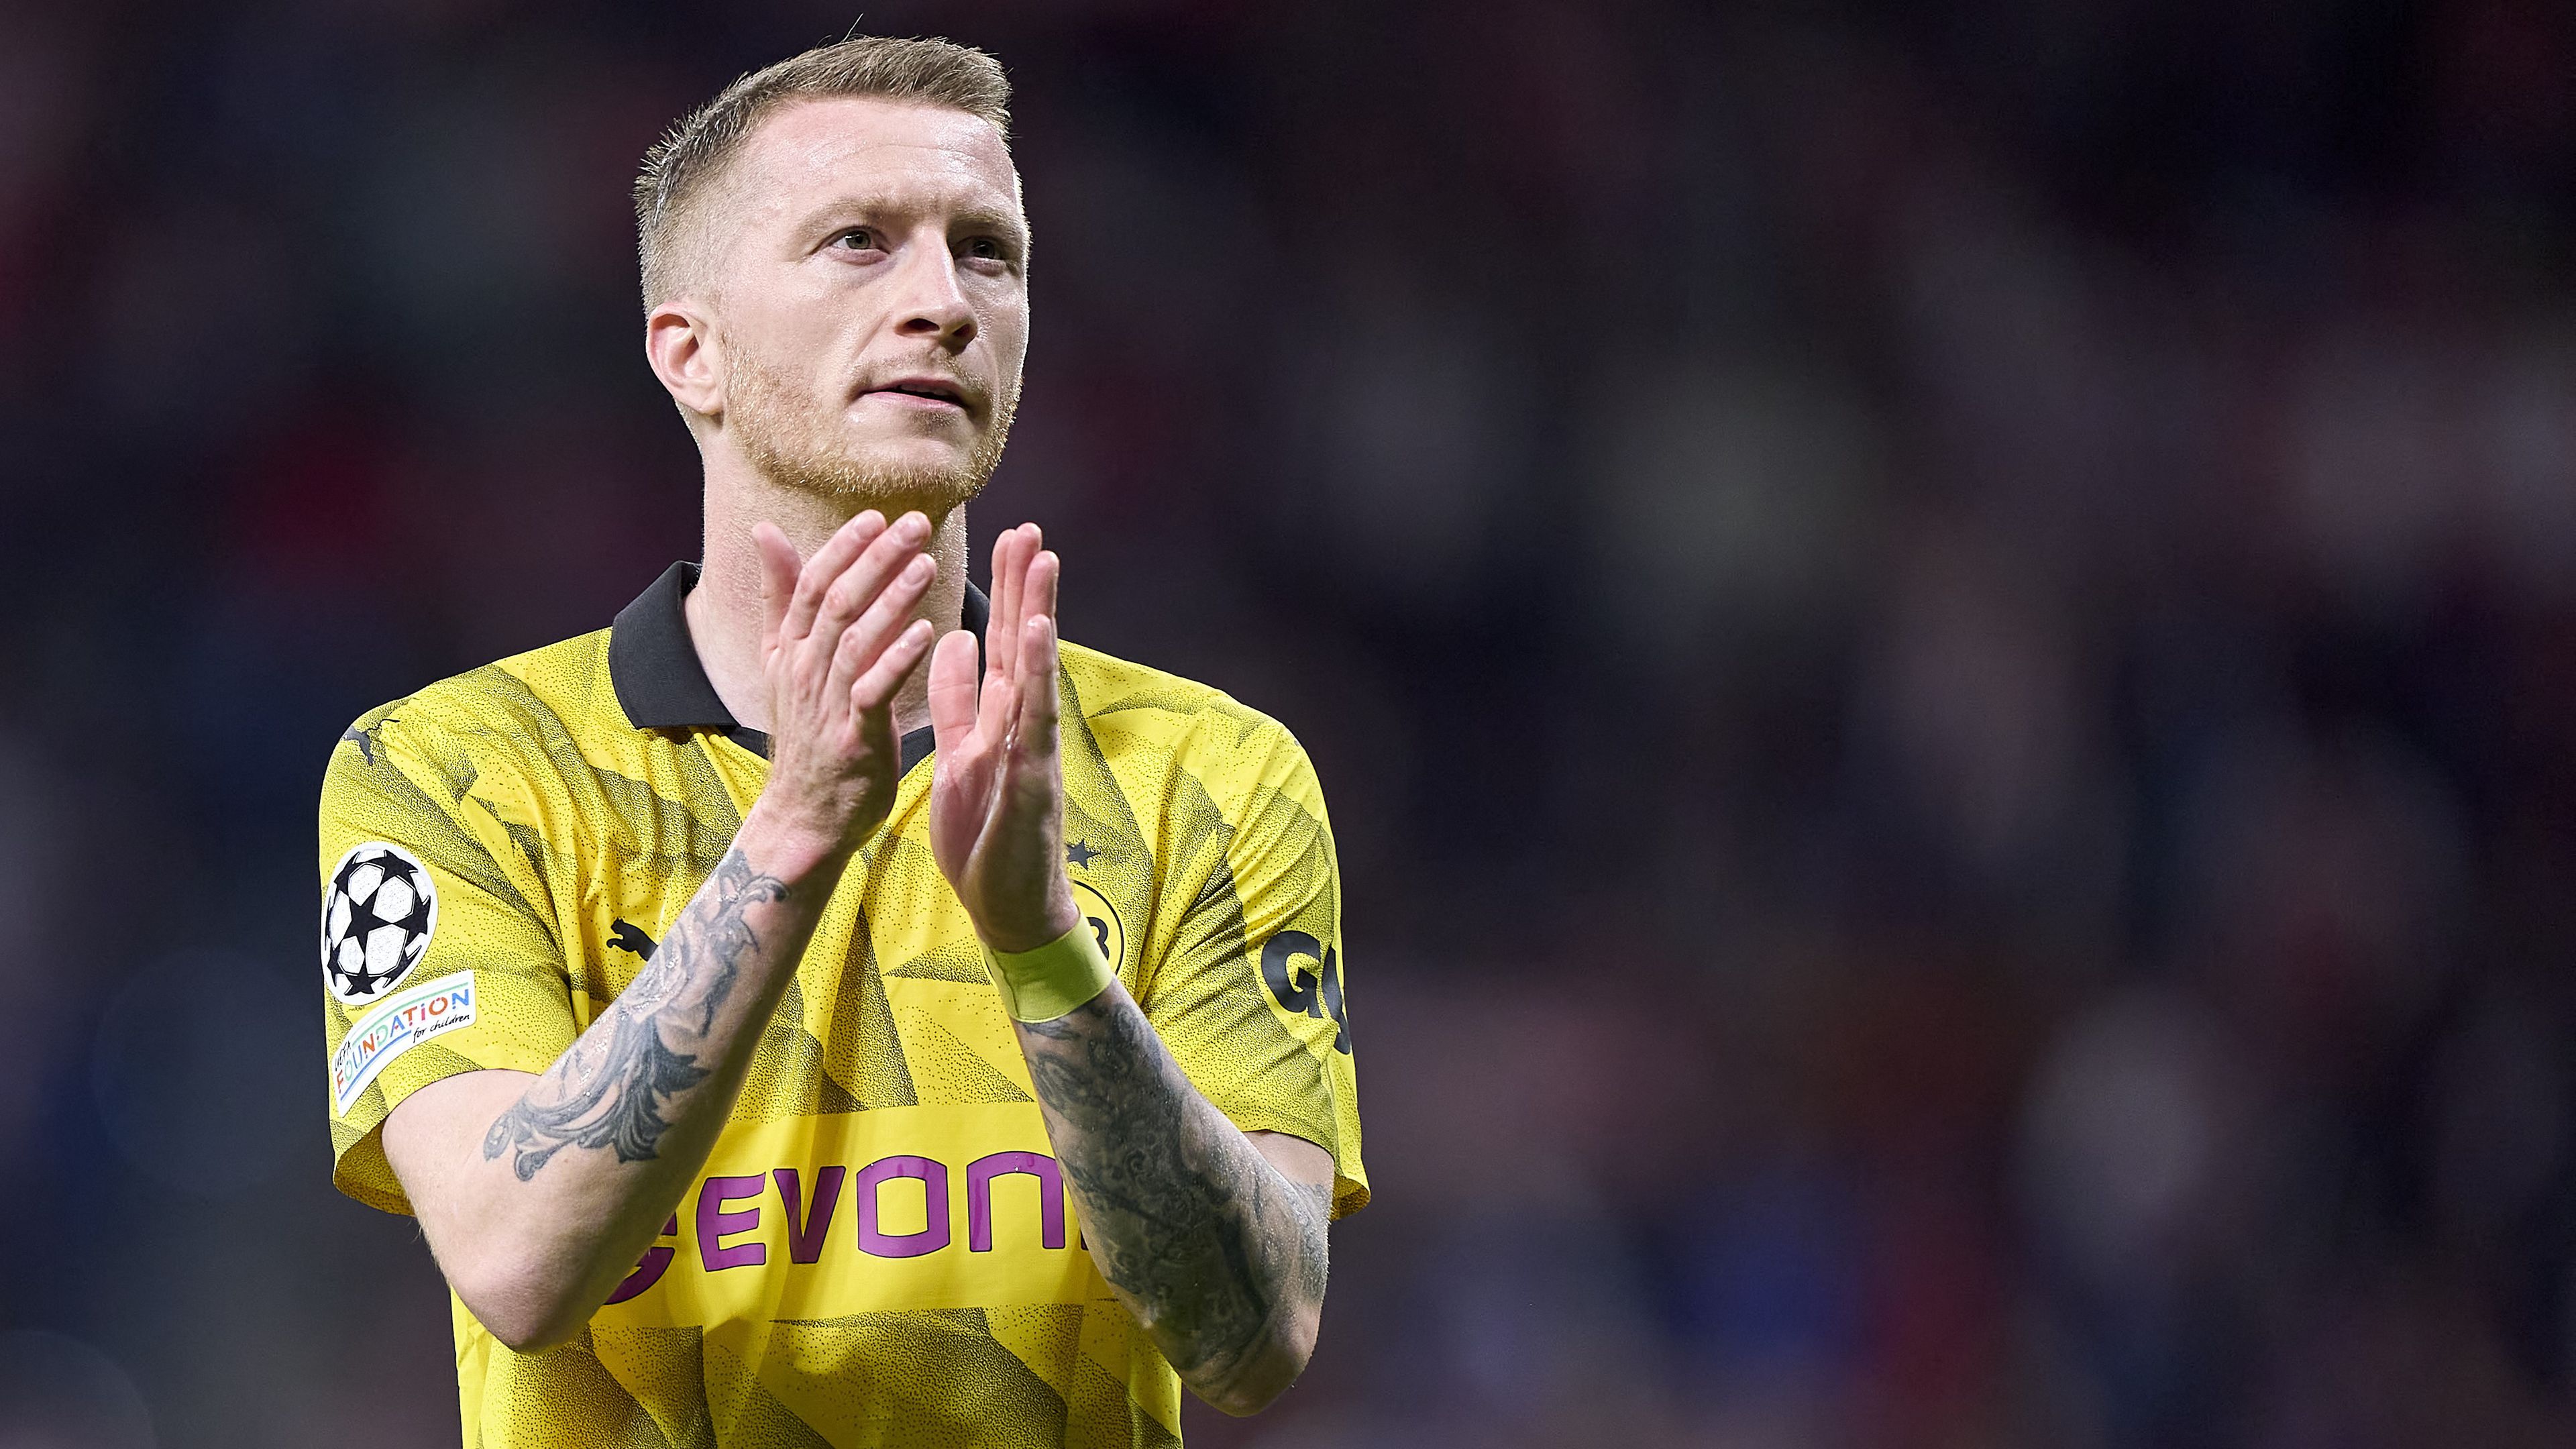 Tizenkét év után távozik a Dortmund legendája; Hajdú B. István köszöni a támogatást – délutáni hírösszefoglaló